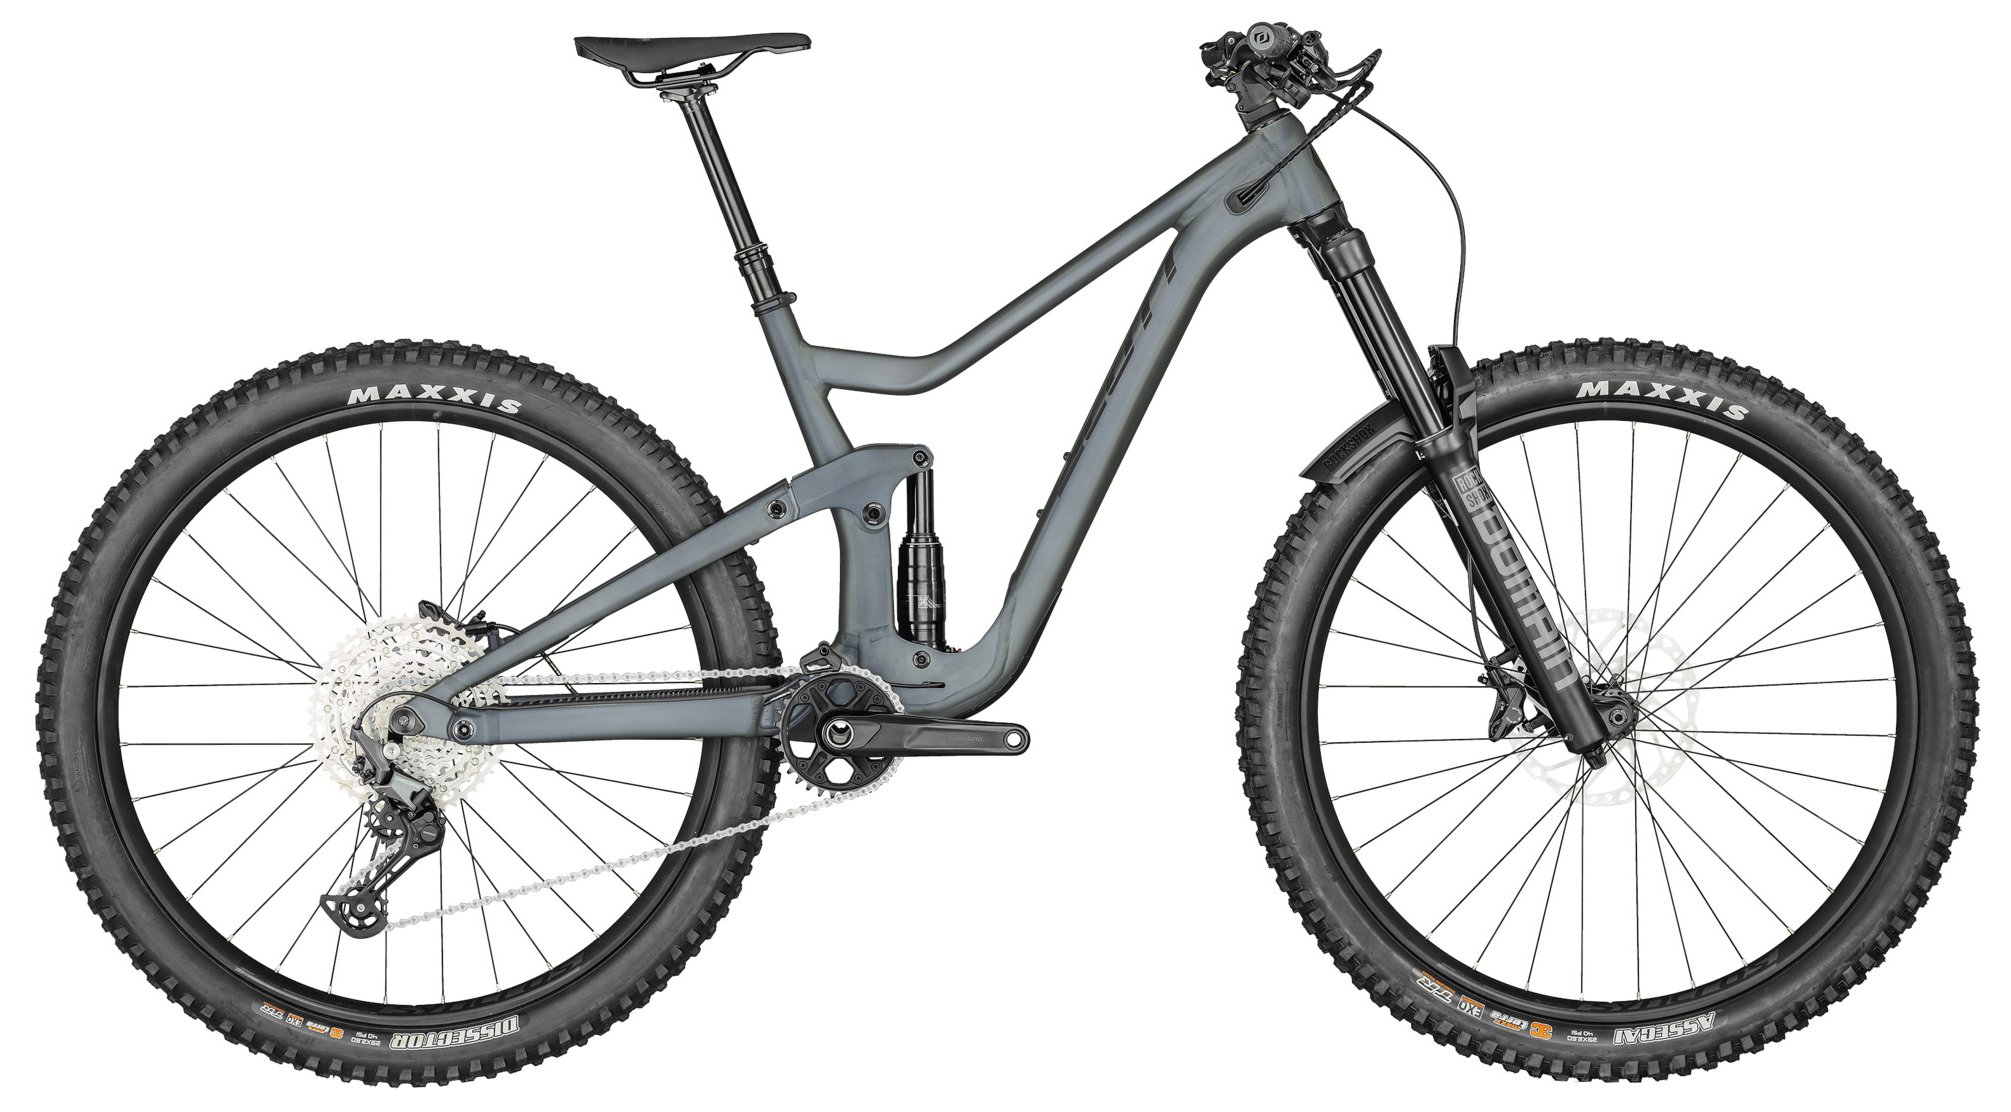  Отзывы о Двухподвесном велосипеде Scott Ransom 930 2020